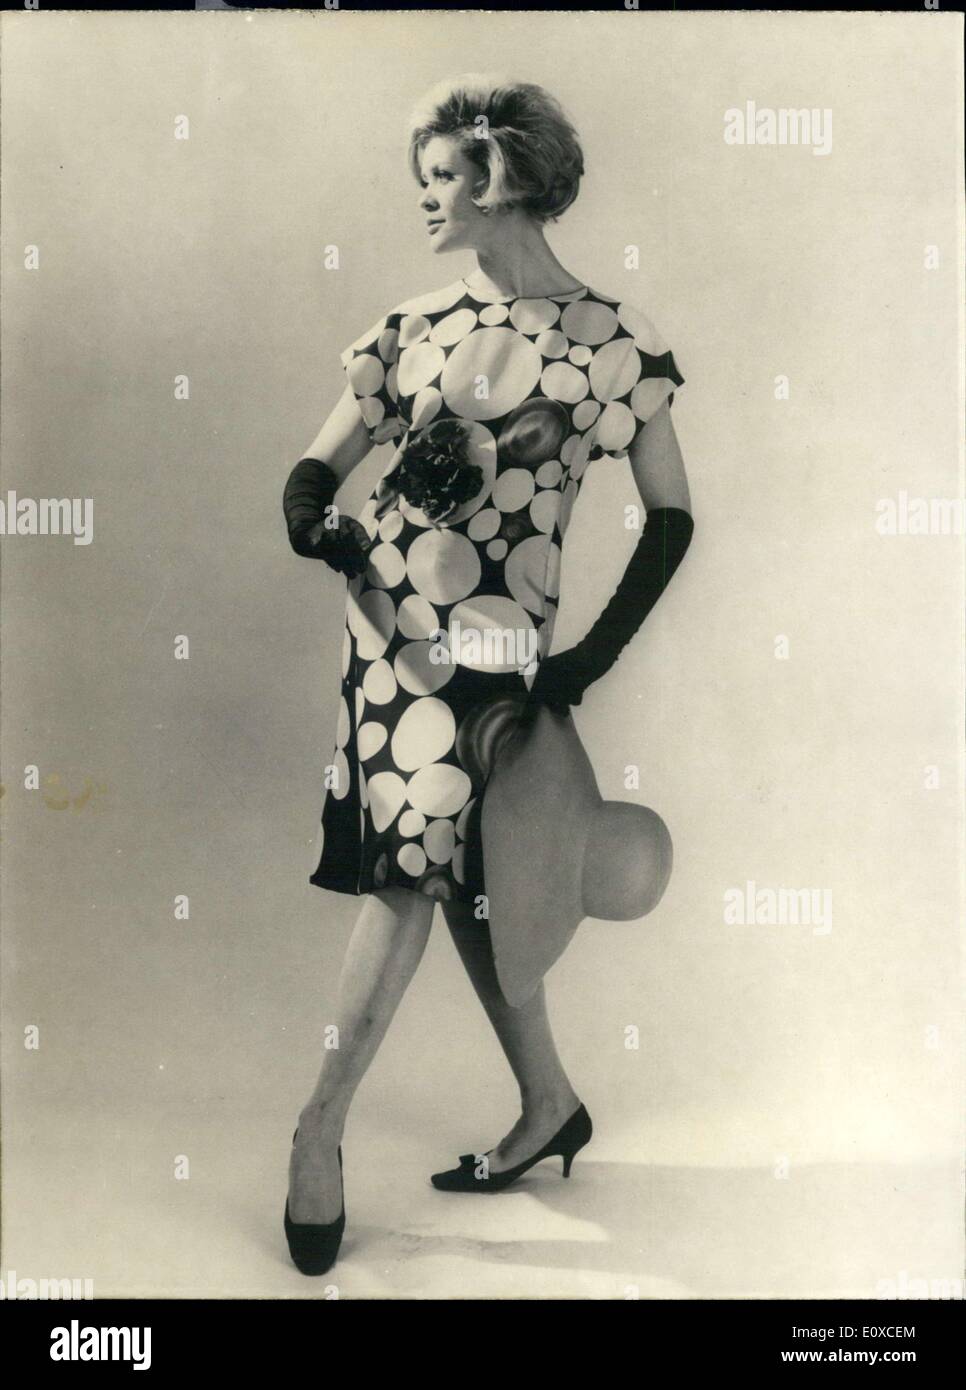 Giugno 04, 1966 - sapore parigino: per cocktail party, abito parigino designer Jacques Launay ha creato questa sura abito con grande seppia e cielo blu dots provenienti su nero. Il vestito è decorato con un fiore realizzato nello stesso materiale. La foto mostra un modello presenta l'abito da cocktail. Foto Stock